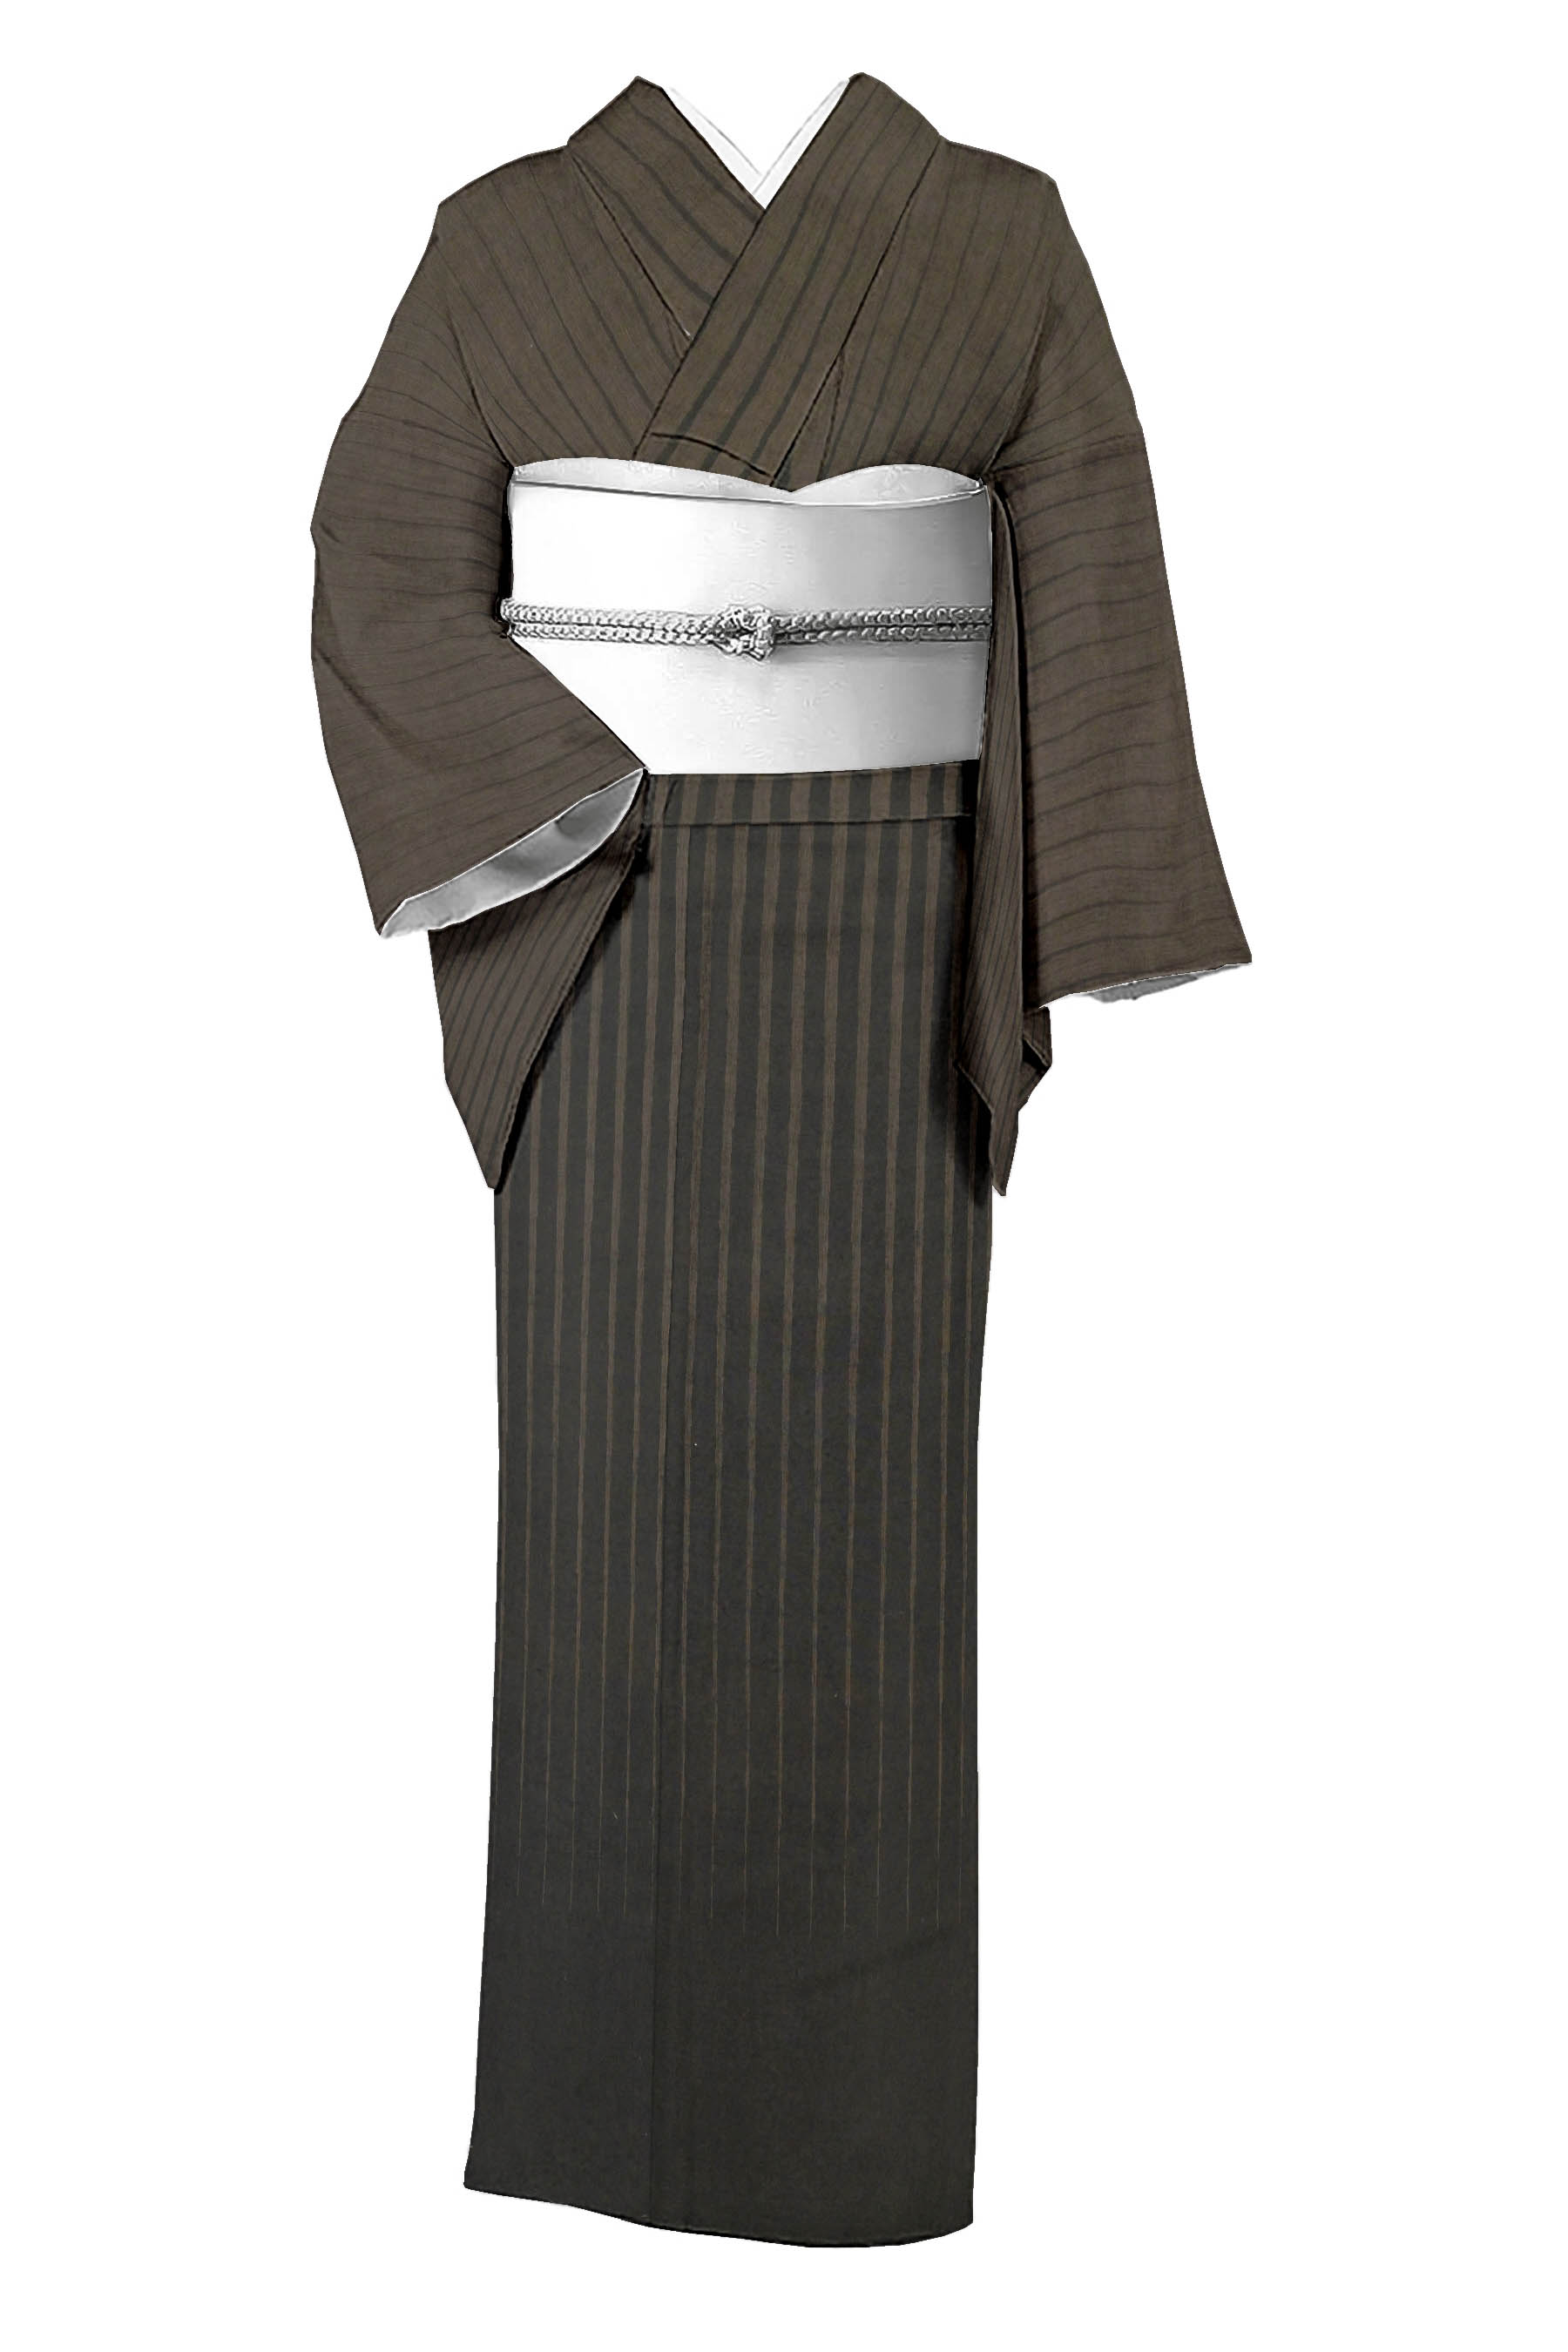 樋口隆司の着物・帯の一覧|京都きもの市場【日本最大級の着物通販サイト】